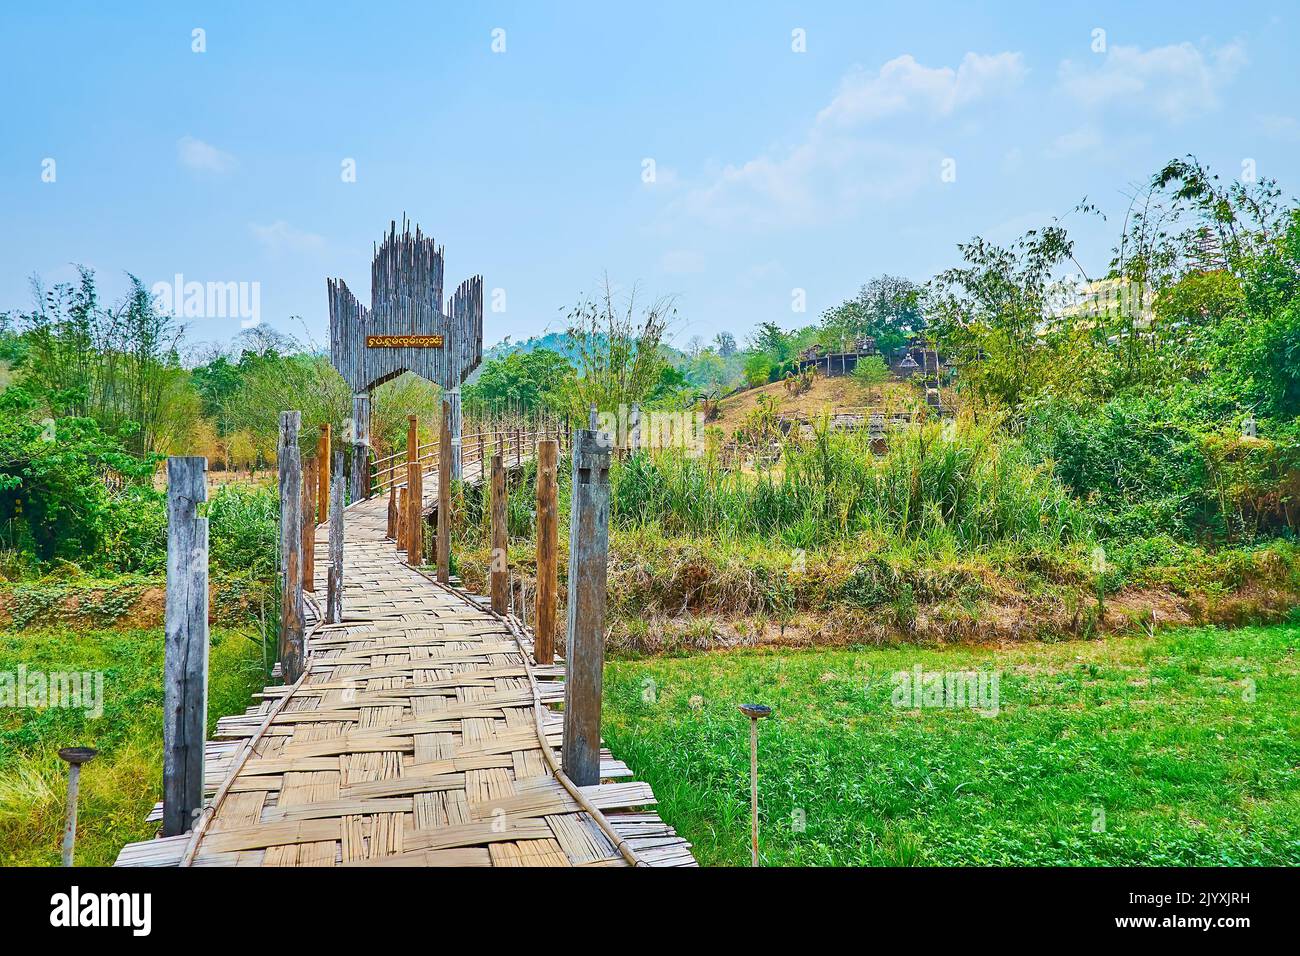 Su Tong Pae Bamboo Bridge, ubicado en medio de los arrozales del suburbio de Mae Hong Son, Tailandia Foto de stock